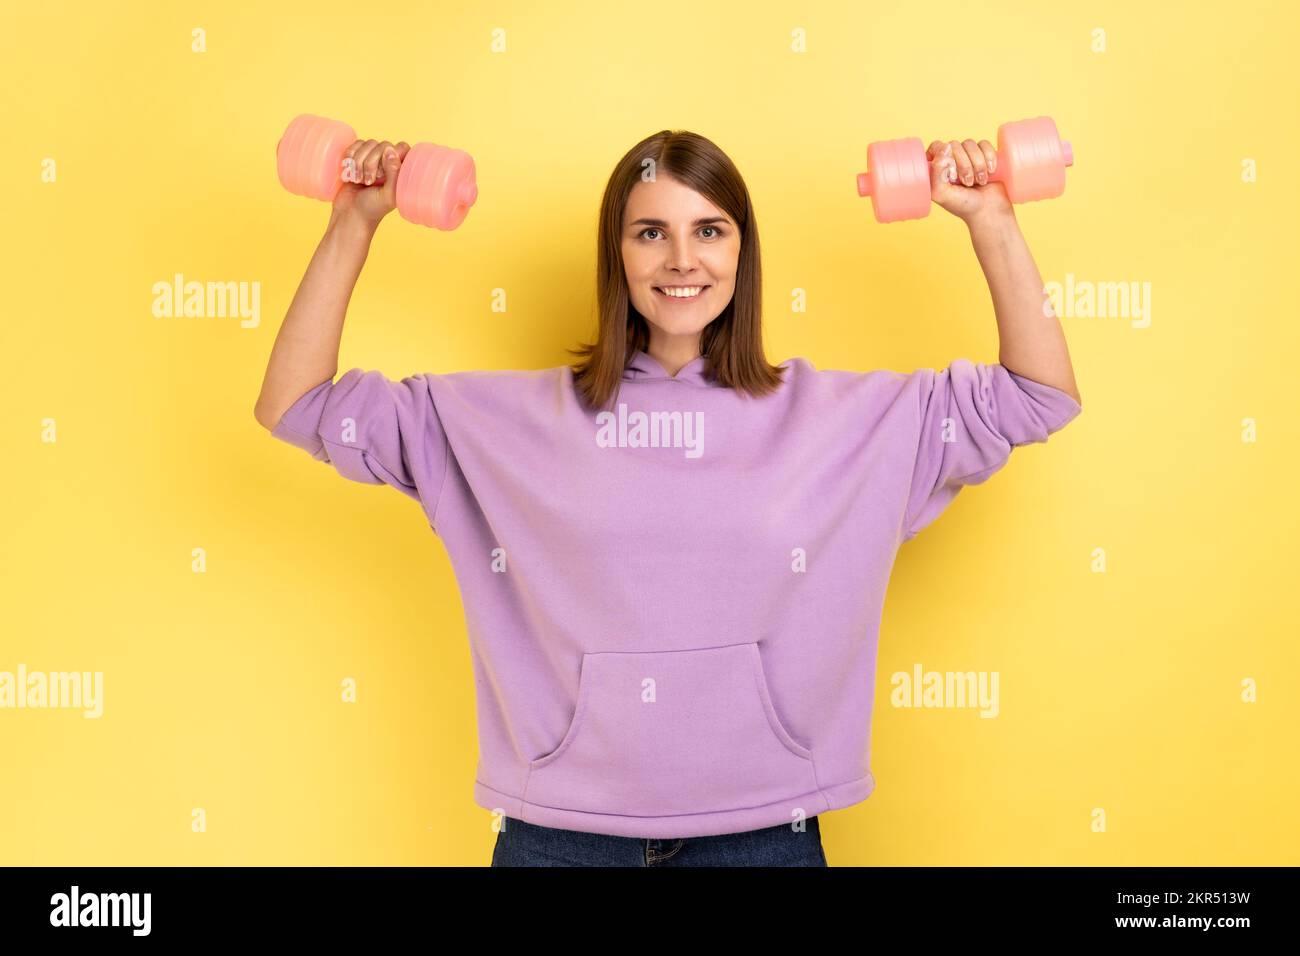 Sportliche Frau erhob die Arme, machte Fitnessübungen mit pinkfarbenen Kurzhanteln, trainierte Hände, schaute mit einem Lächeln in die Kamera, trug einen lila Hoodie. Innenstudio-Aufnahme isoliert auf gelbem Hintergrund. Stockfoto